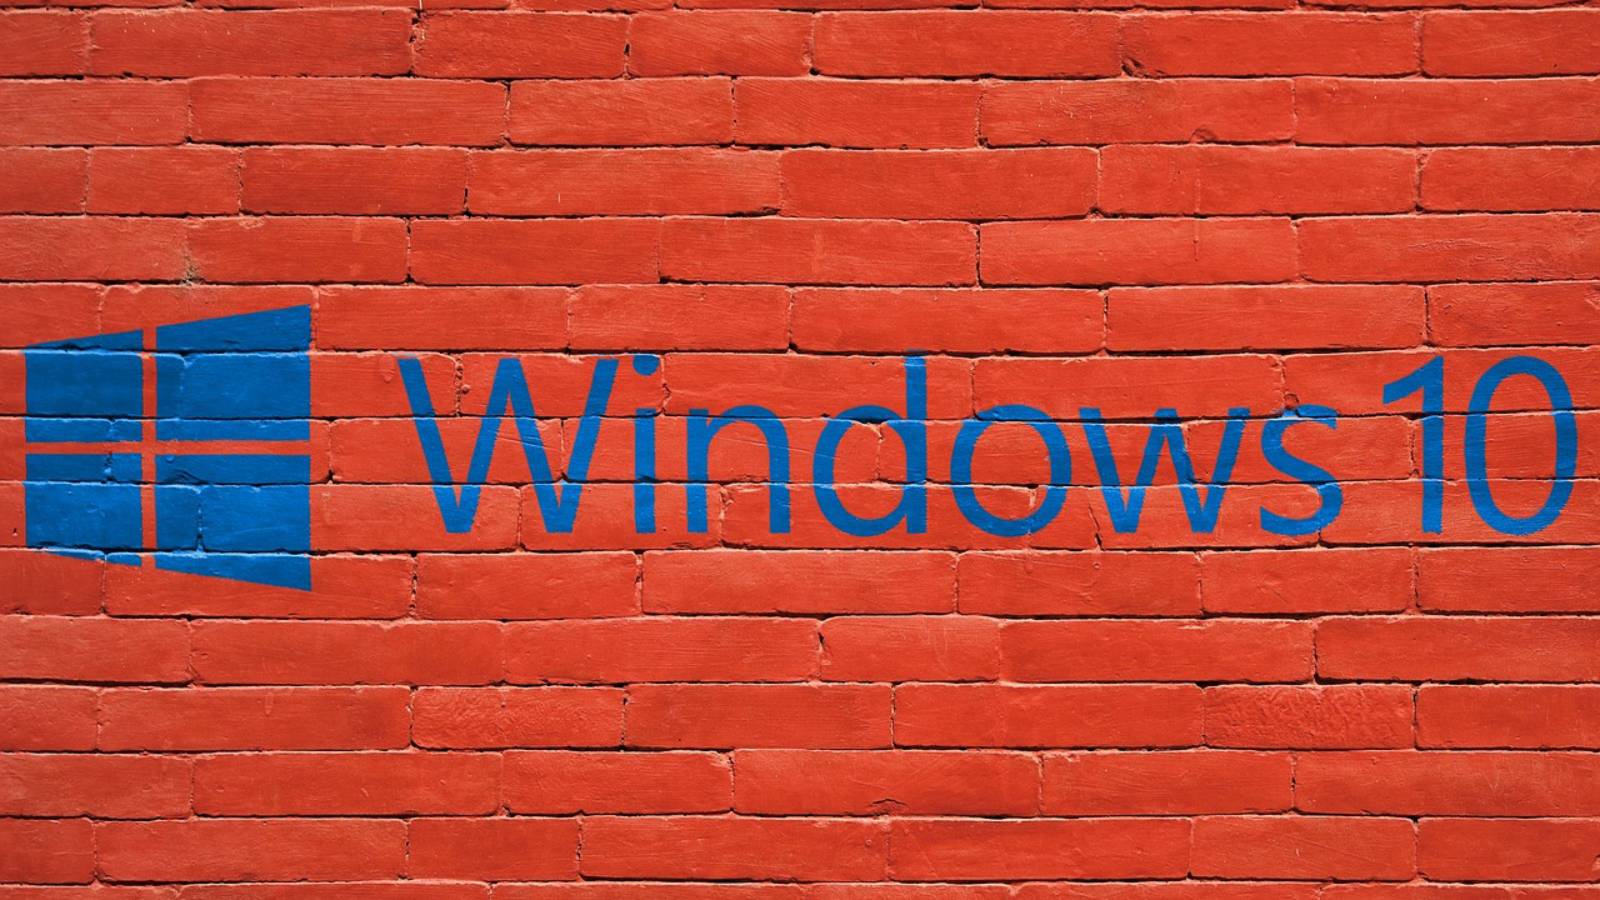 Wydano aktualizację systemu Windows 10 z maja 2019 r